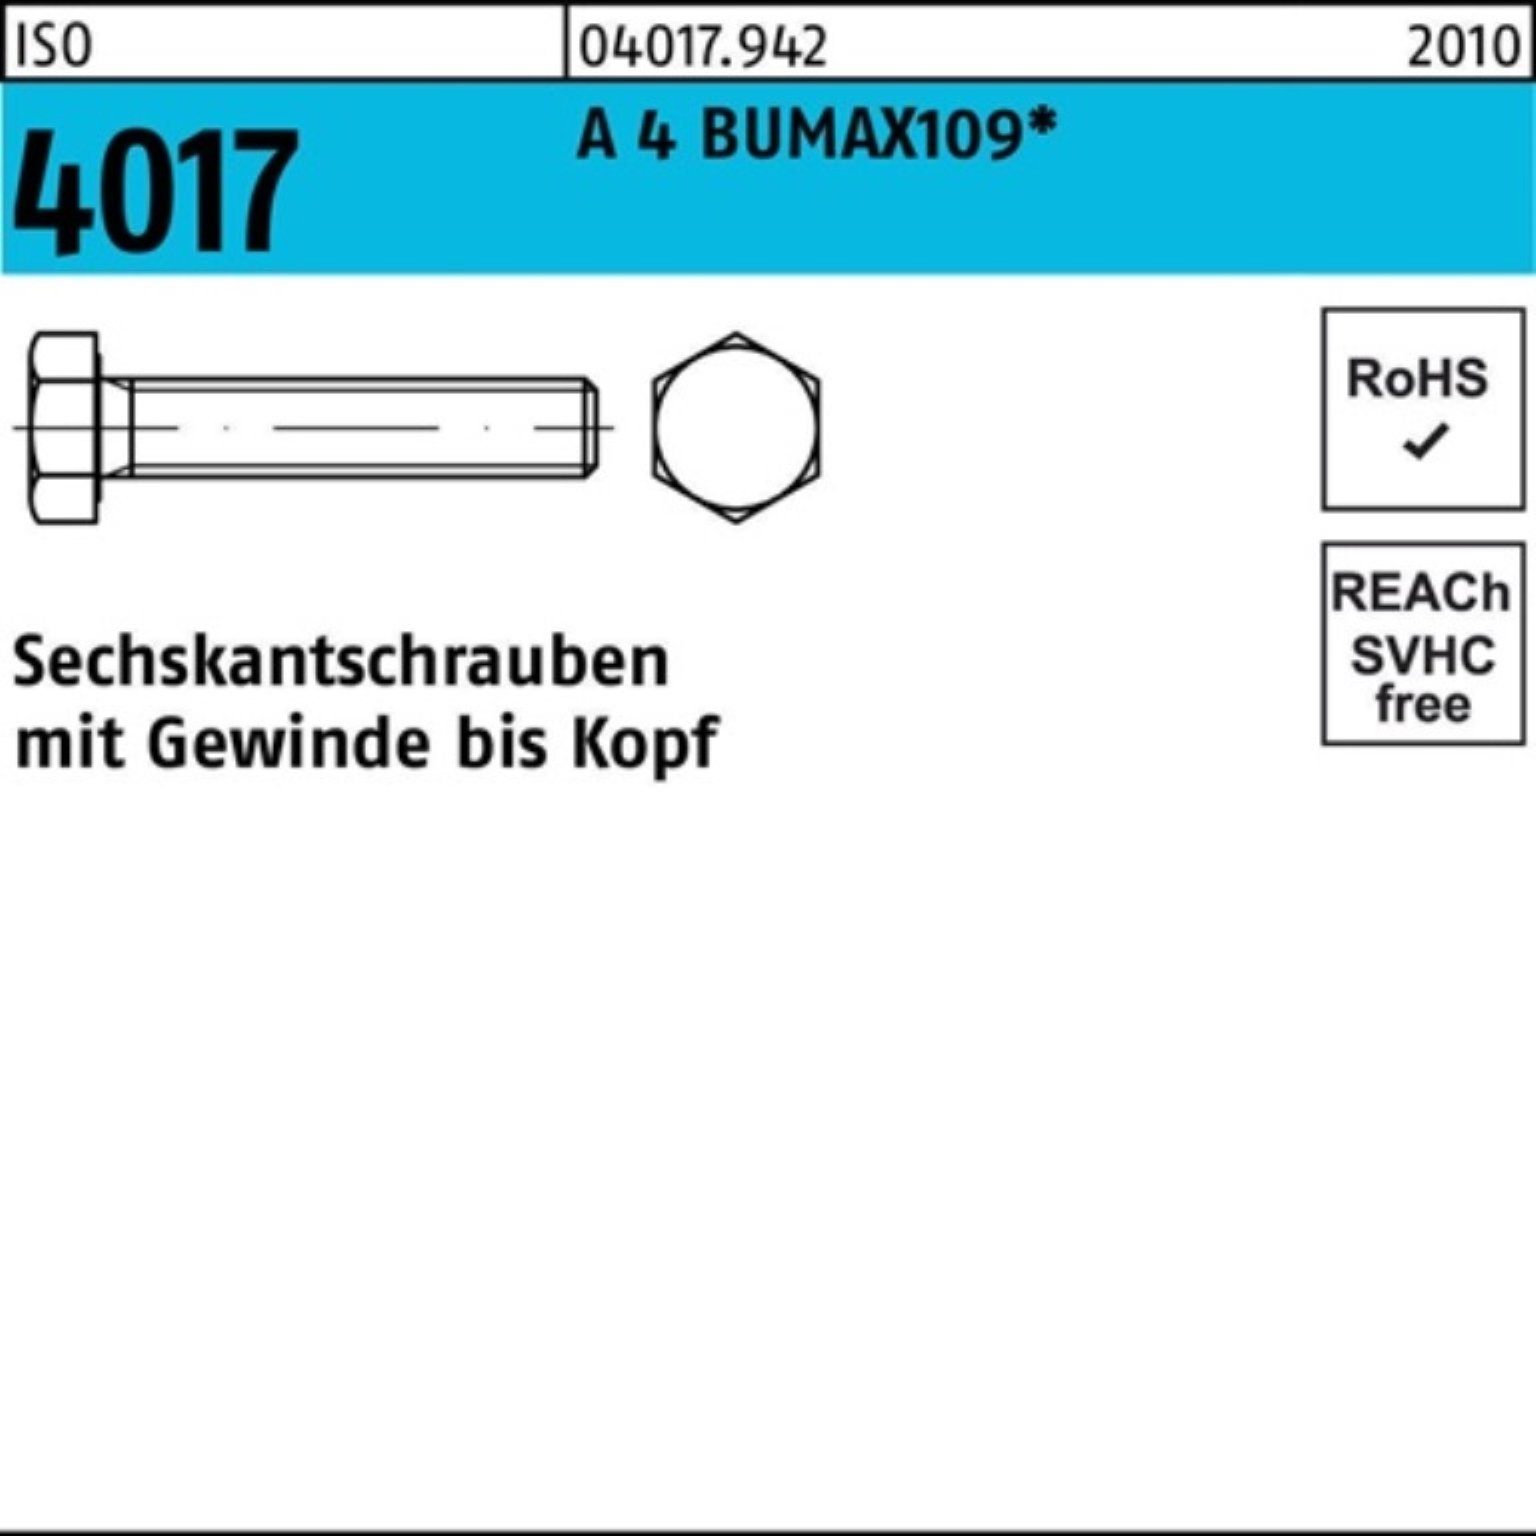 Bufab Sechskantschraube 100er Pack Sechskantschraube ISO 4017 VG M16x 50 A 4 BUMAX109 25 Stüc